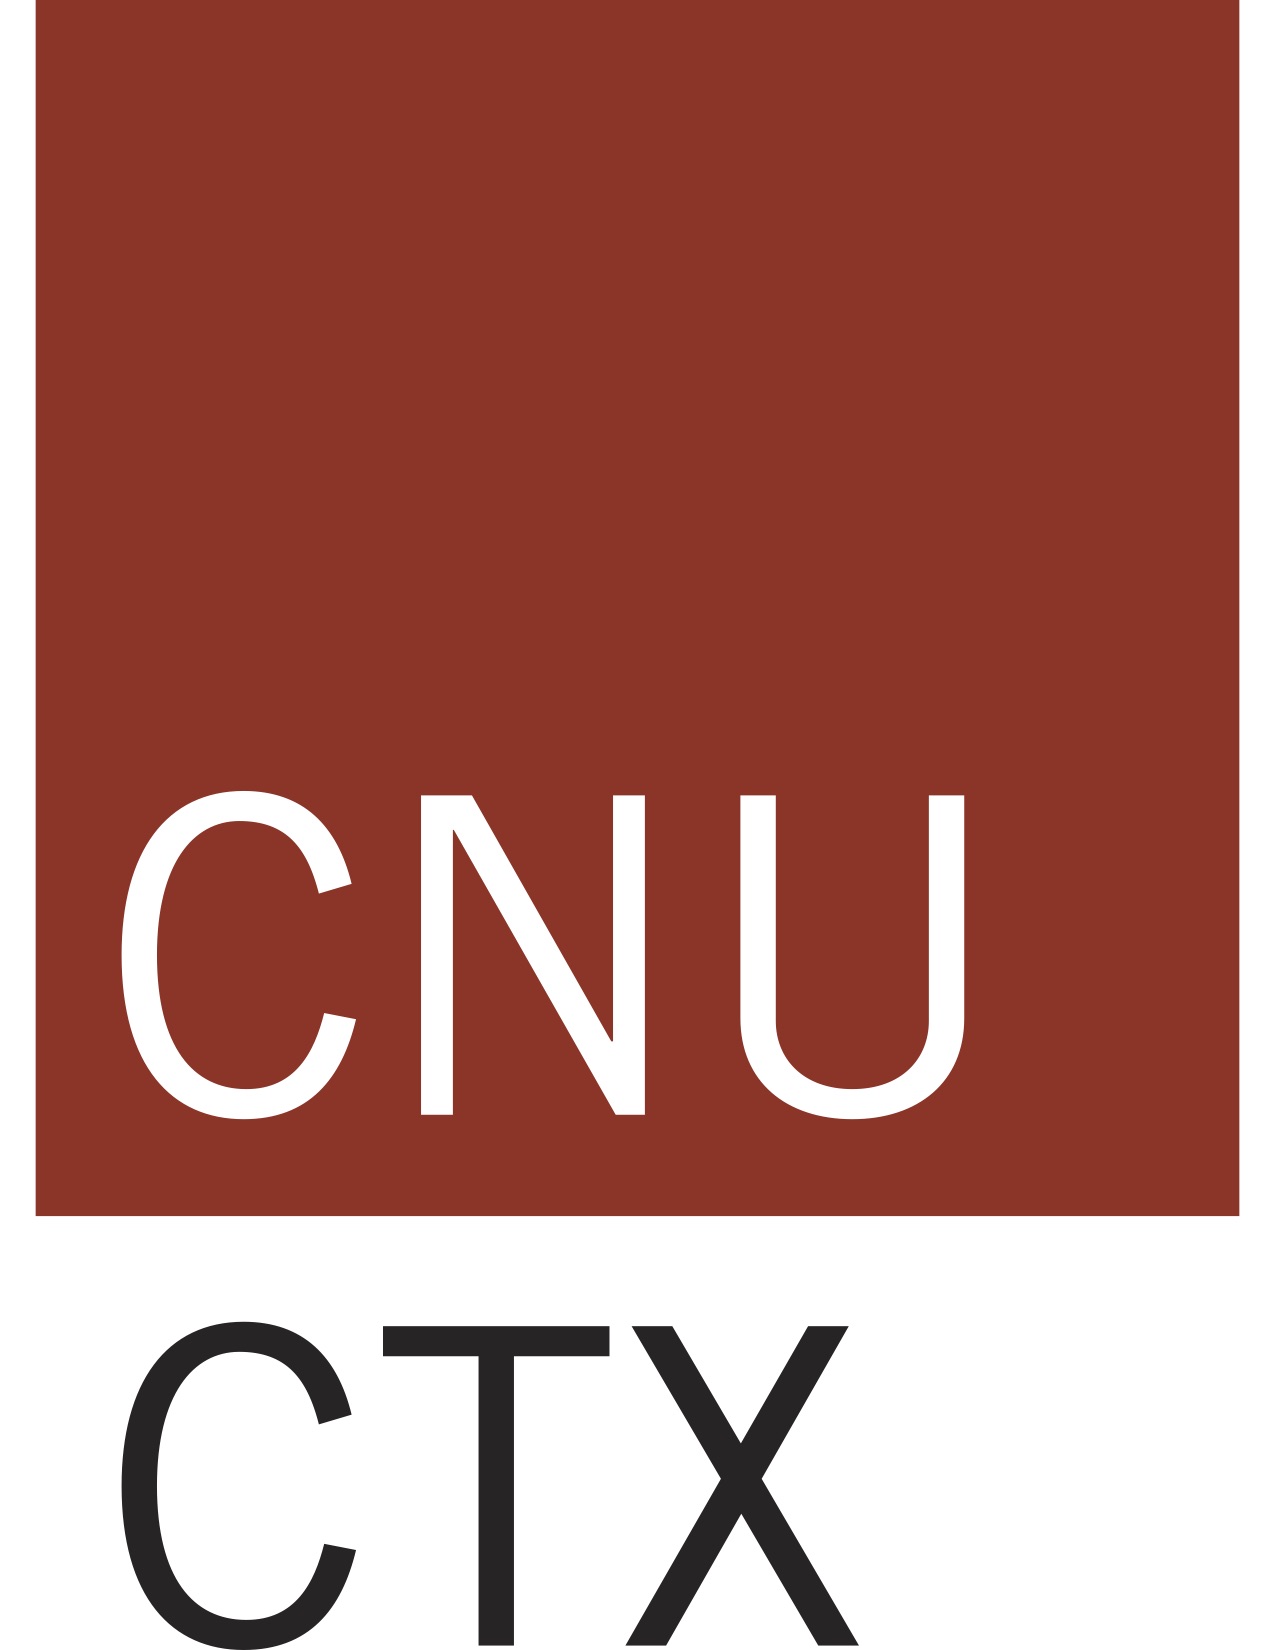 cnu-ctx-logo-red copy 2.jpg